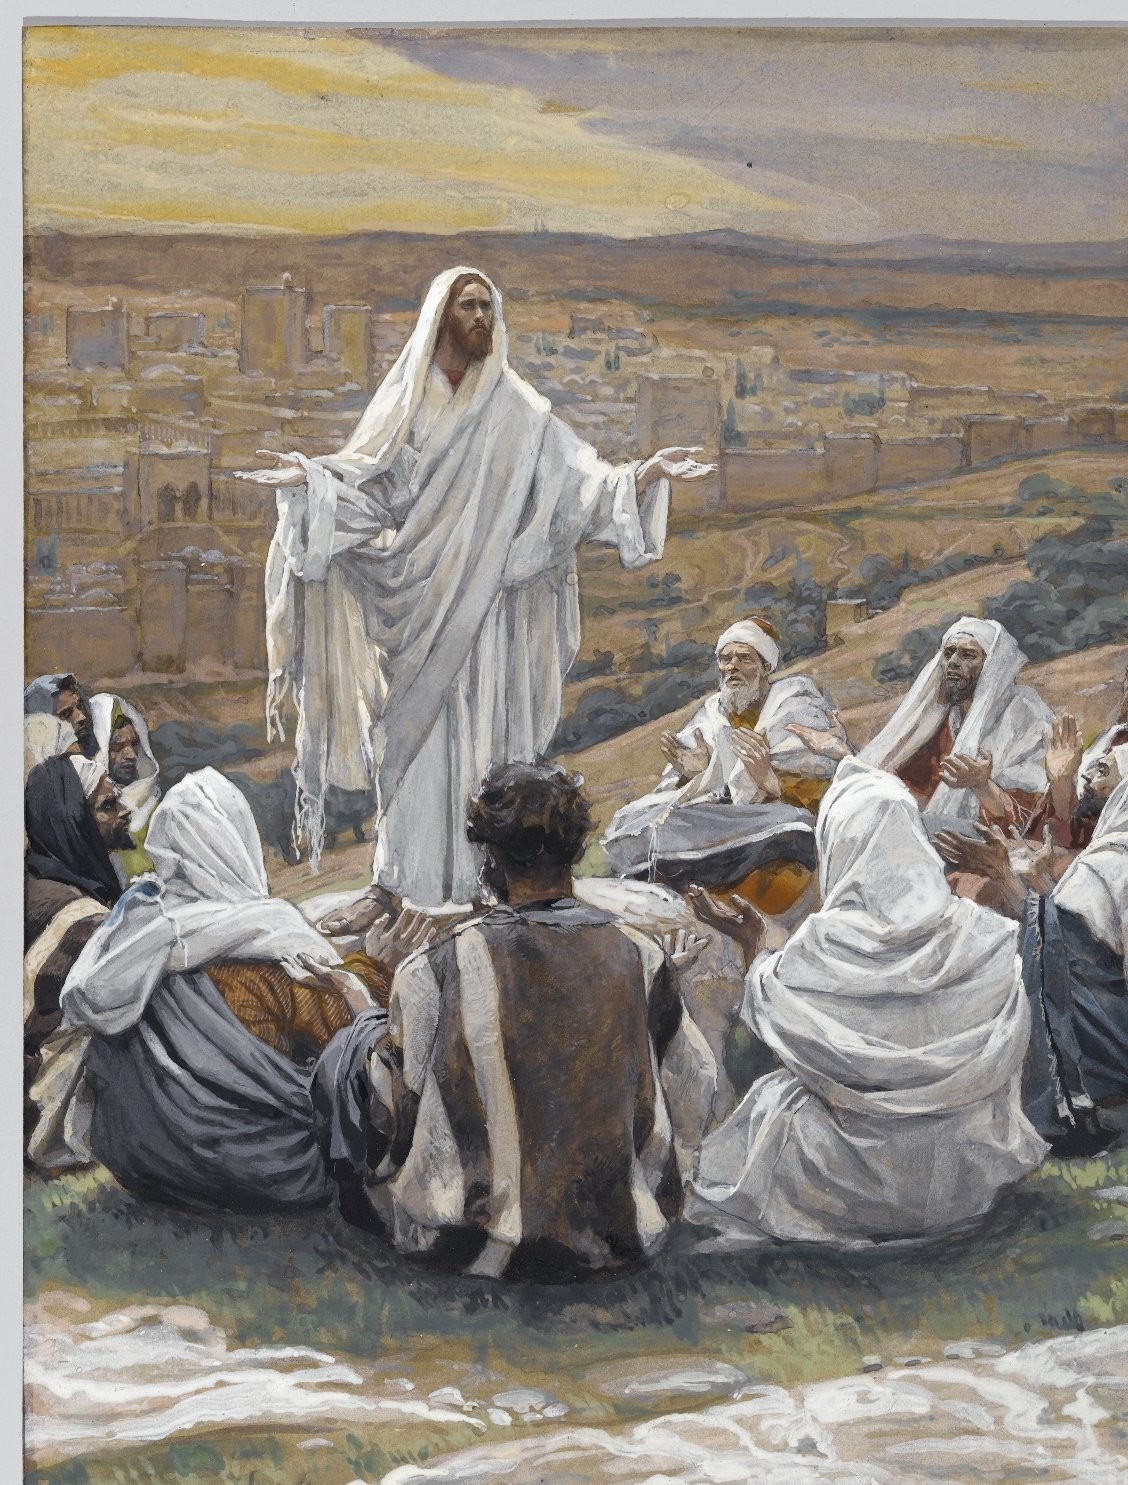 Сцена из жизни Христа. Картина из собрания Бруклинского музея, 1895 г.